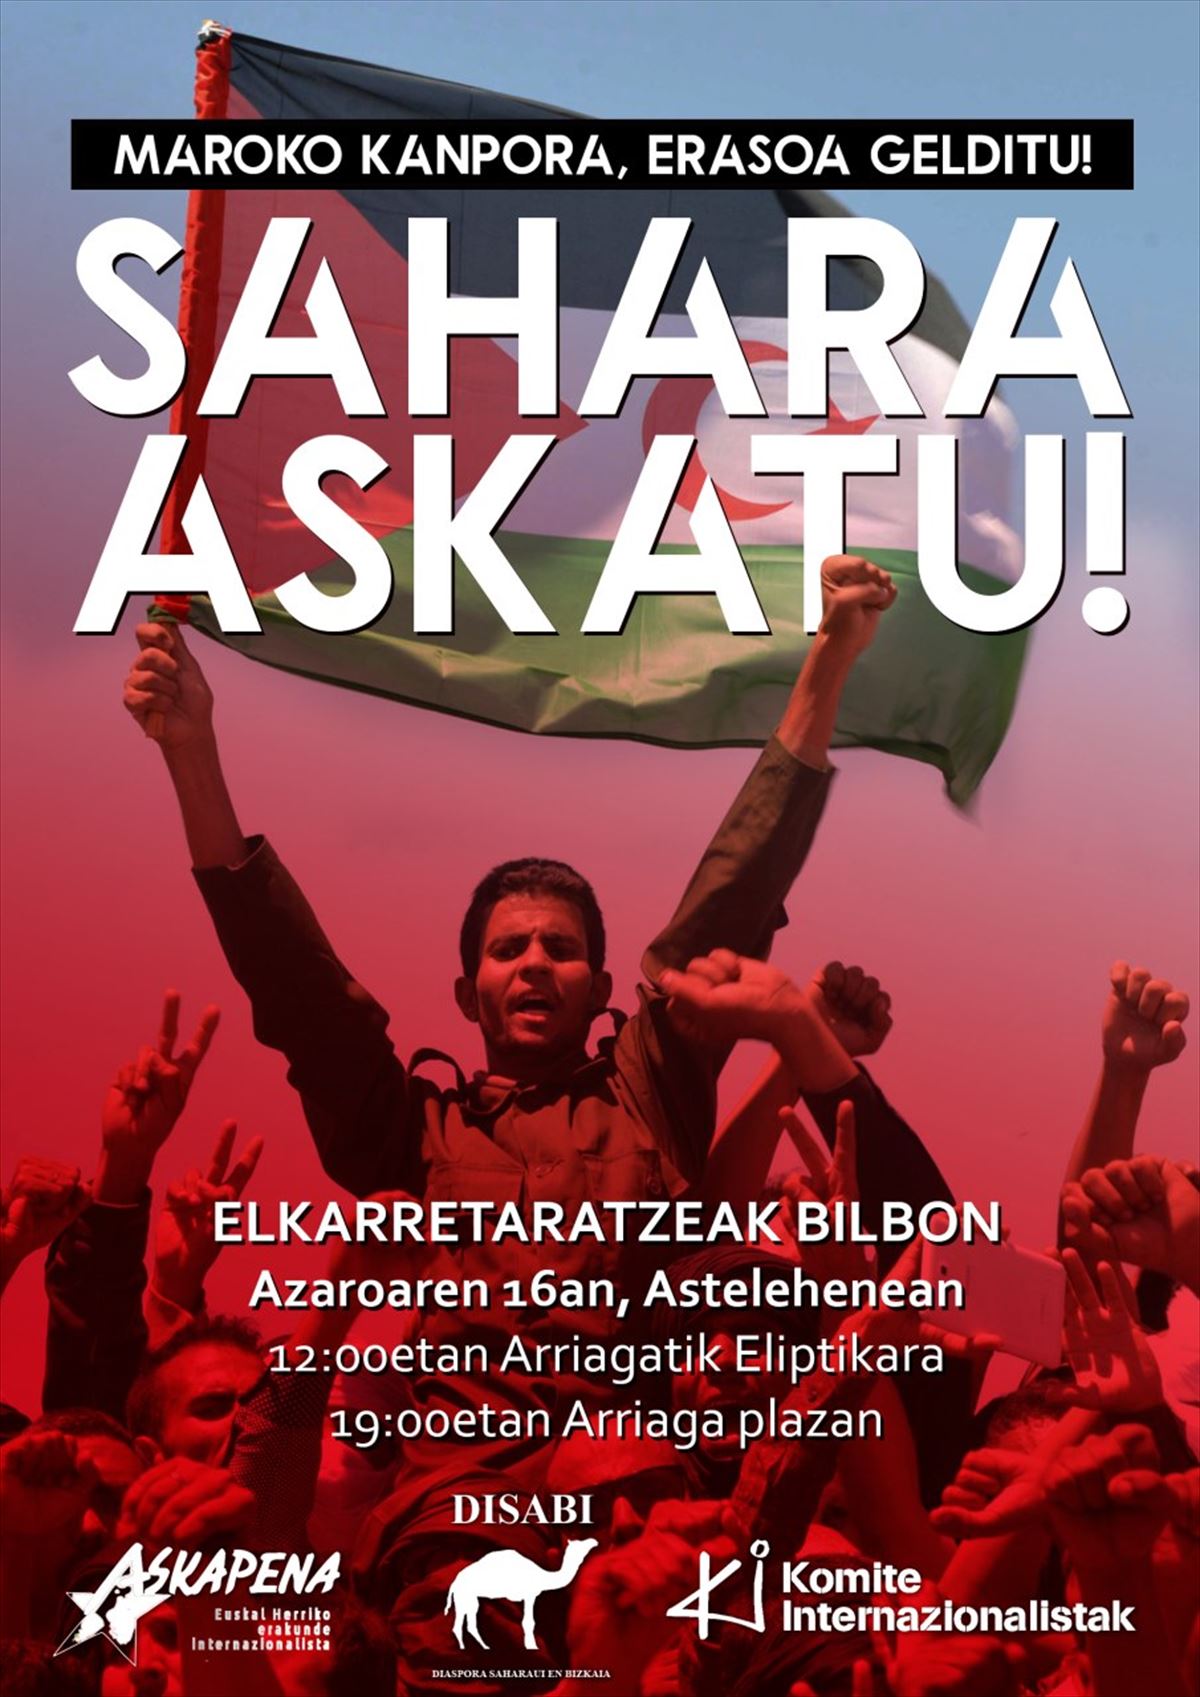 Cartel anunciador de la manifestación en solidaridad con el pueblo saharaui